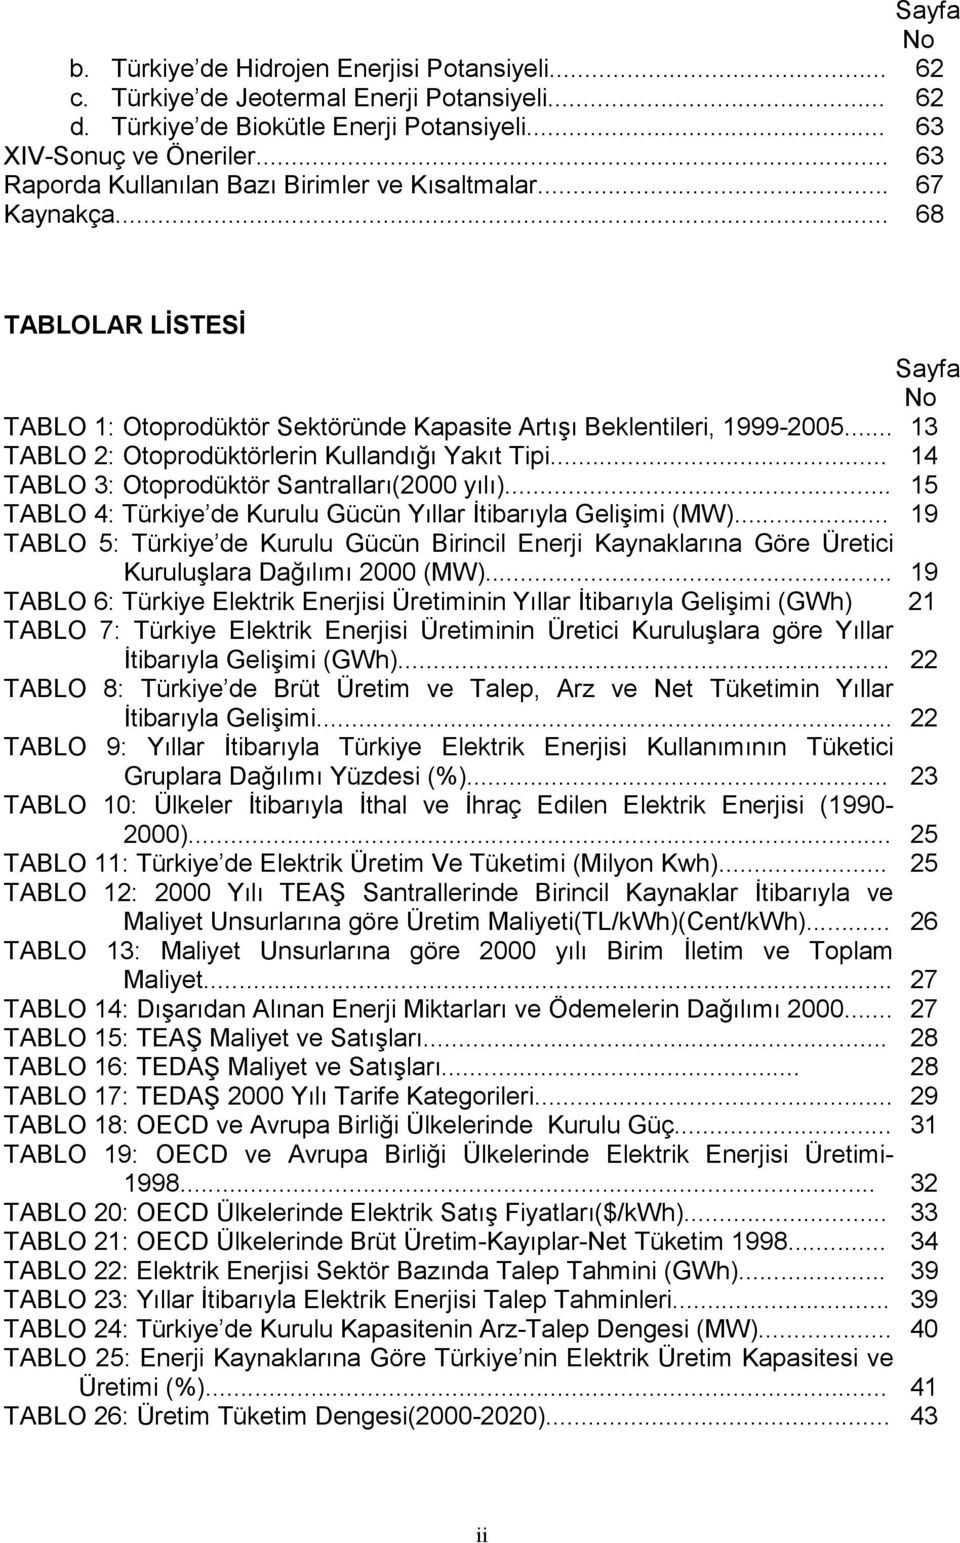 .. 13 TABLO 2: Otoprodüktörlerin Kullandığı Yakıt Tipi... 14 TABLO 3: Otoprodüktör Santralları(2000 yılı)... 15 TABLO 4: Türkiye de Kurulu Gücün Yıllar İtibarıyla Gelişimi (MW).